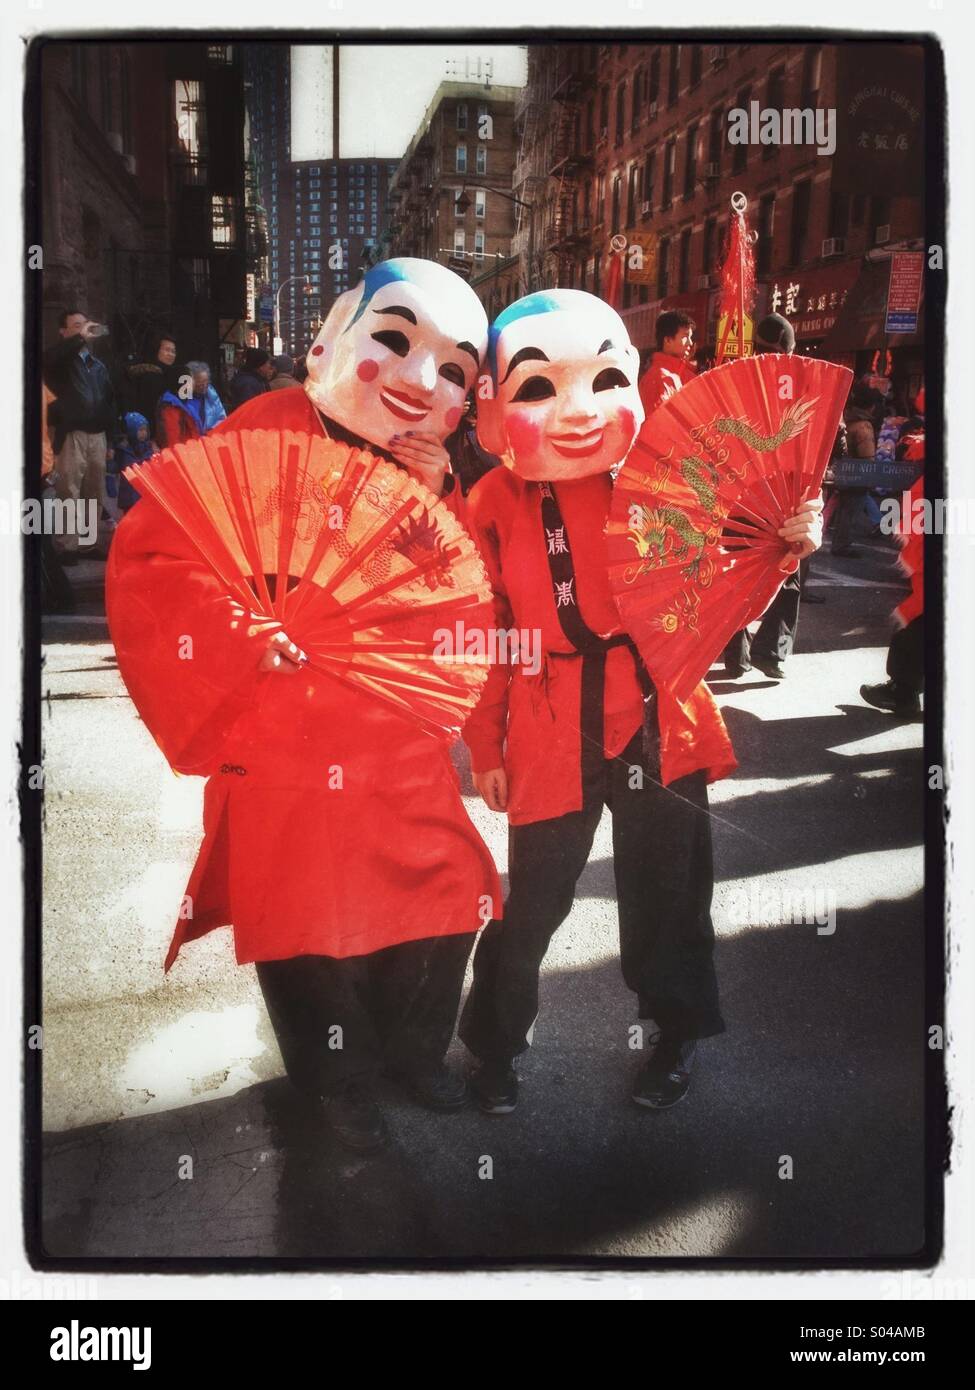 Deux personnes avec des masques de cérémonie et des supporters à la célébration du nouvel an chinois à New York Banque D'Images